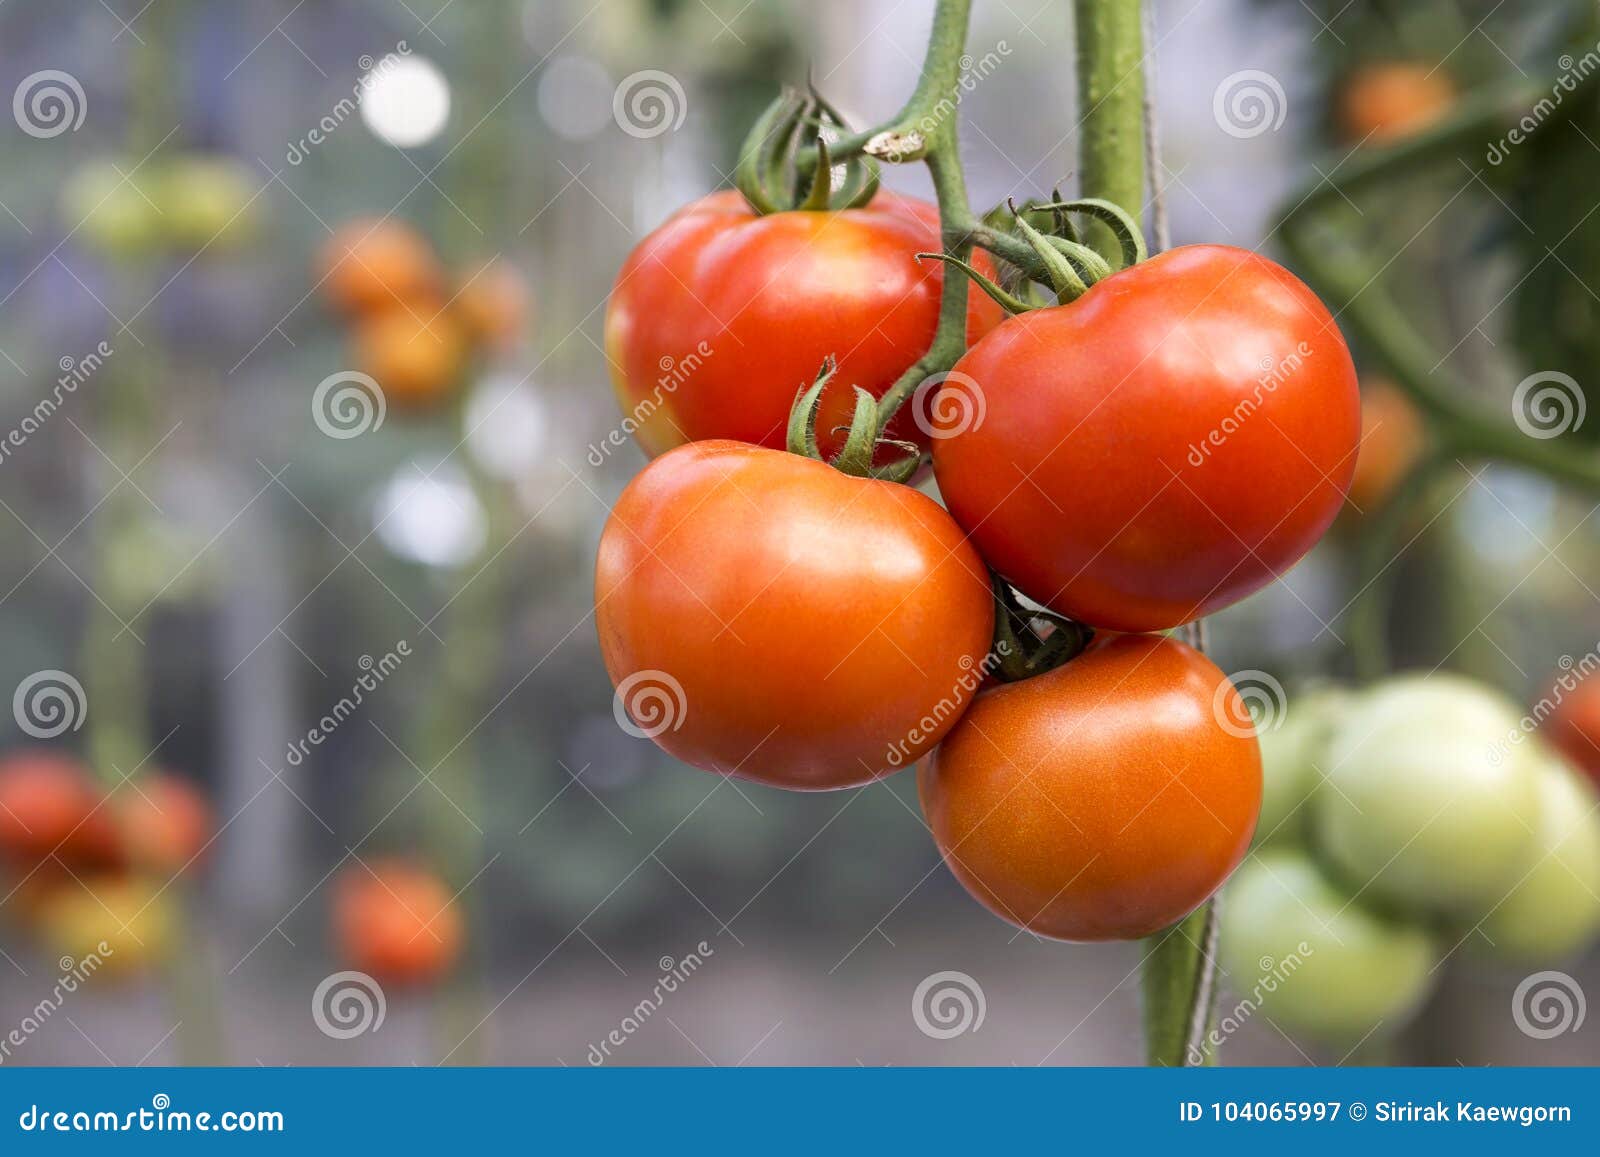 Томат бабушкино форум. Сорт томата Бабушкино. Бабушкино тепло томат. Томат Хоумстед. Партнер томат Бабушкино.